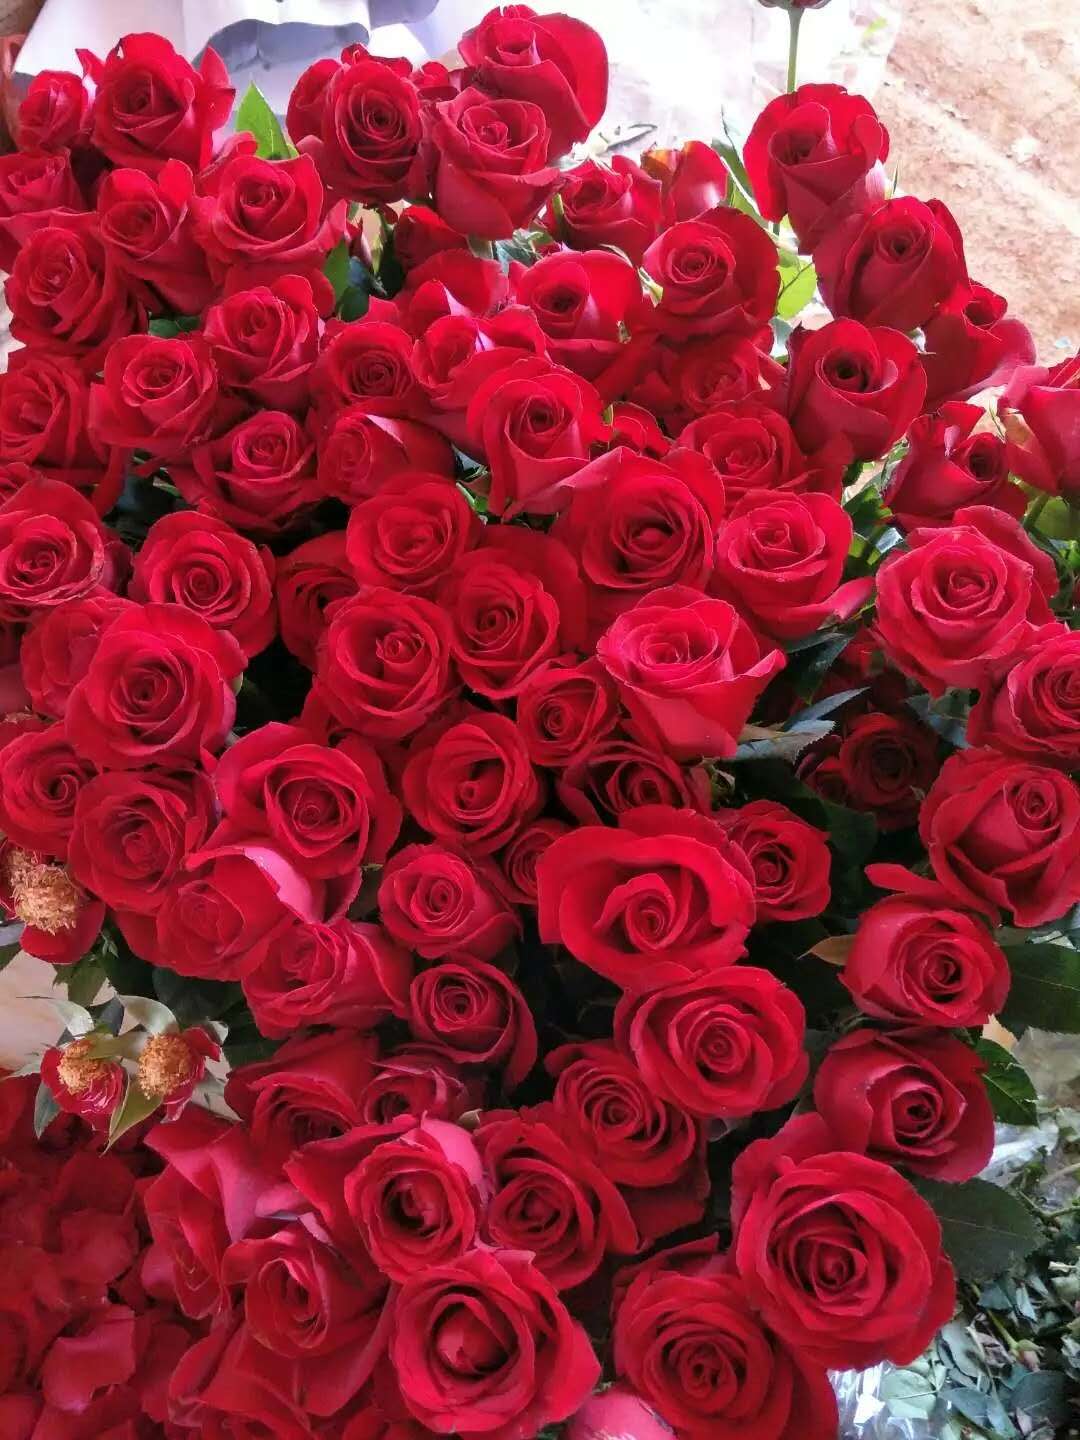 卡罗拉玫瑰苗供应商 卡罗拉玫瑰苗价格 云南卡罗拉玫瑰苗图片